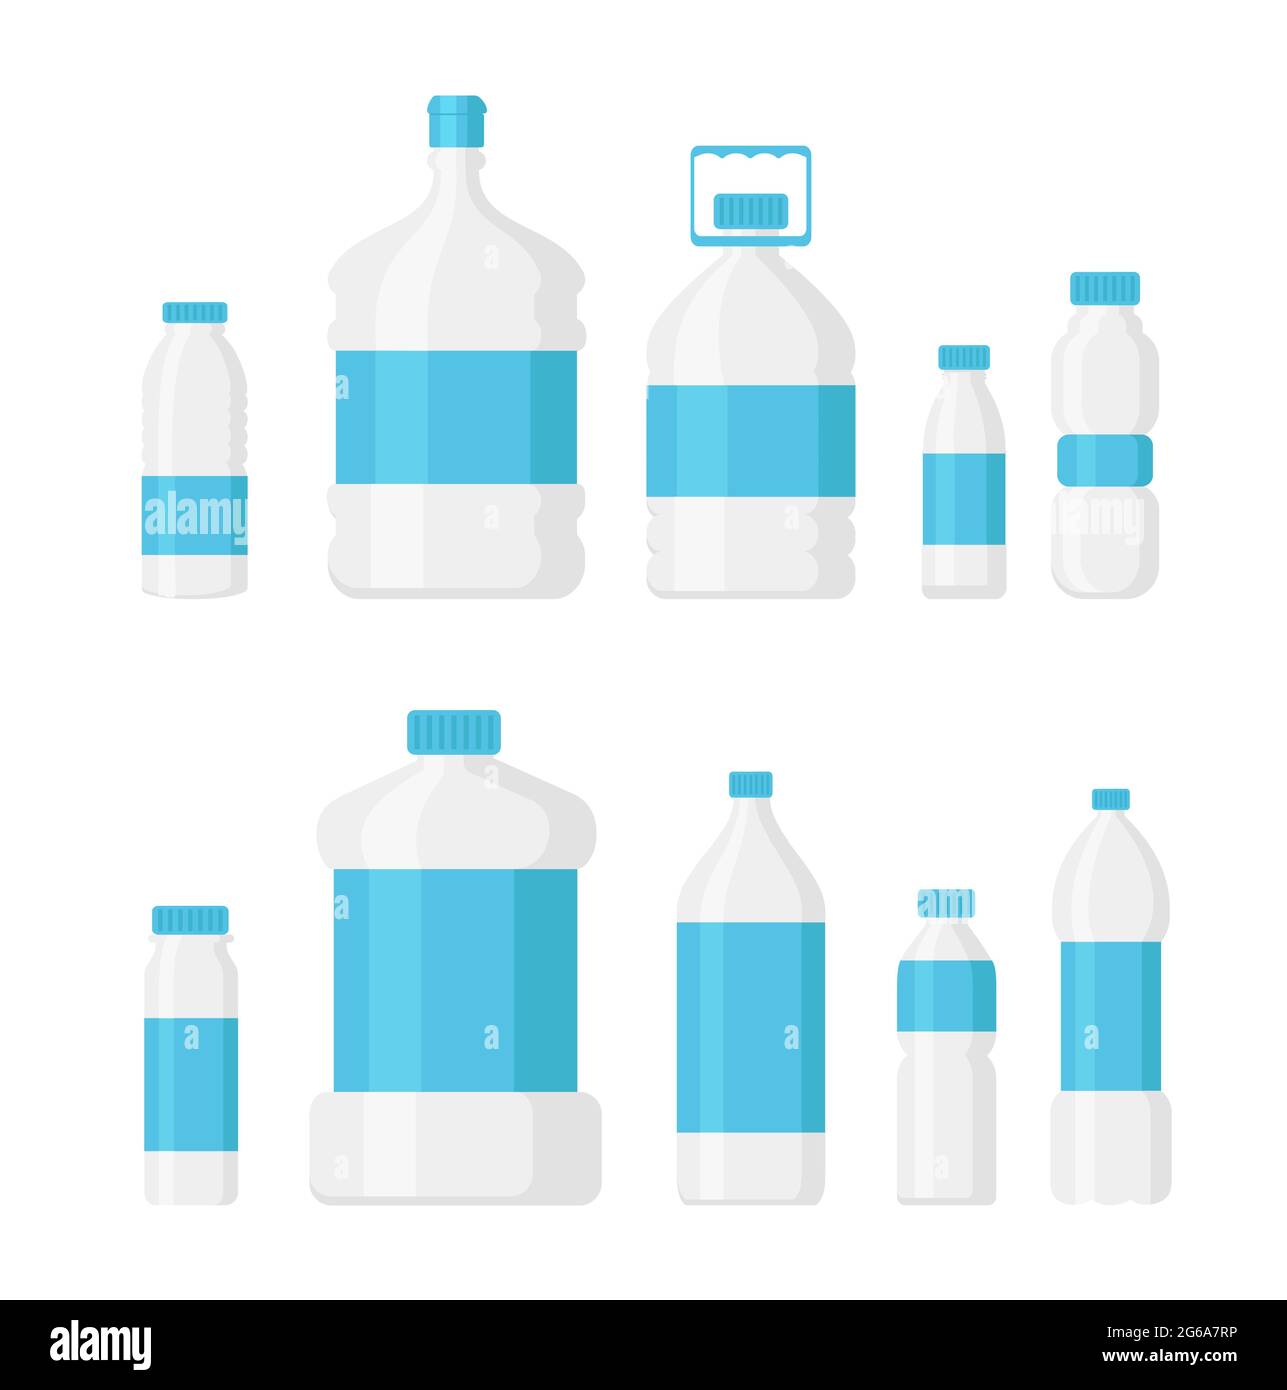 Vektor-Illustration Satz von Wasserflasche Packung hellblaue Farbe isoliert auf weißem Hintergrund. Lieferung Wasser Konzept, Service verschiedene Flaschenformen Stock Vektor